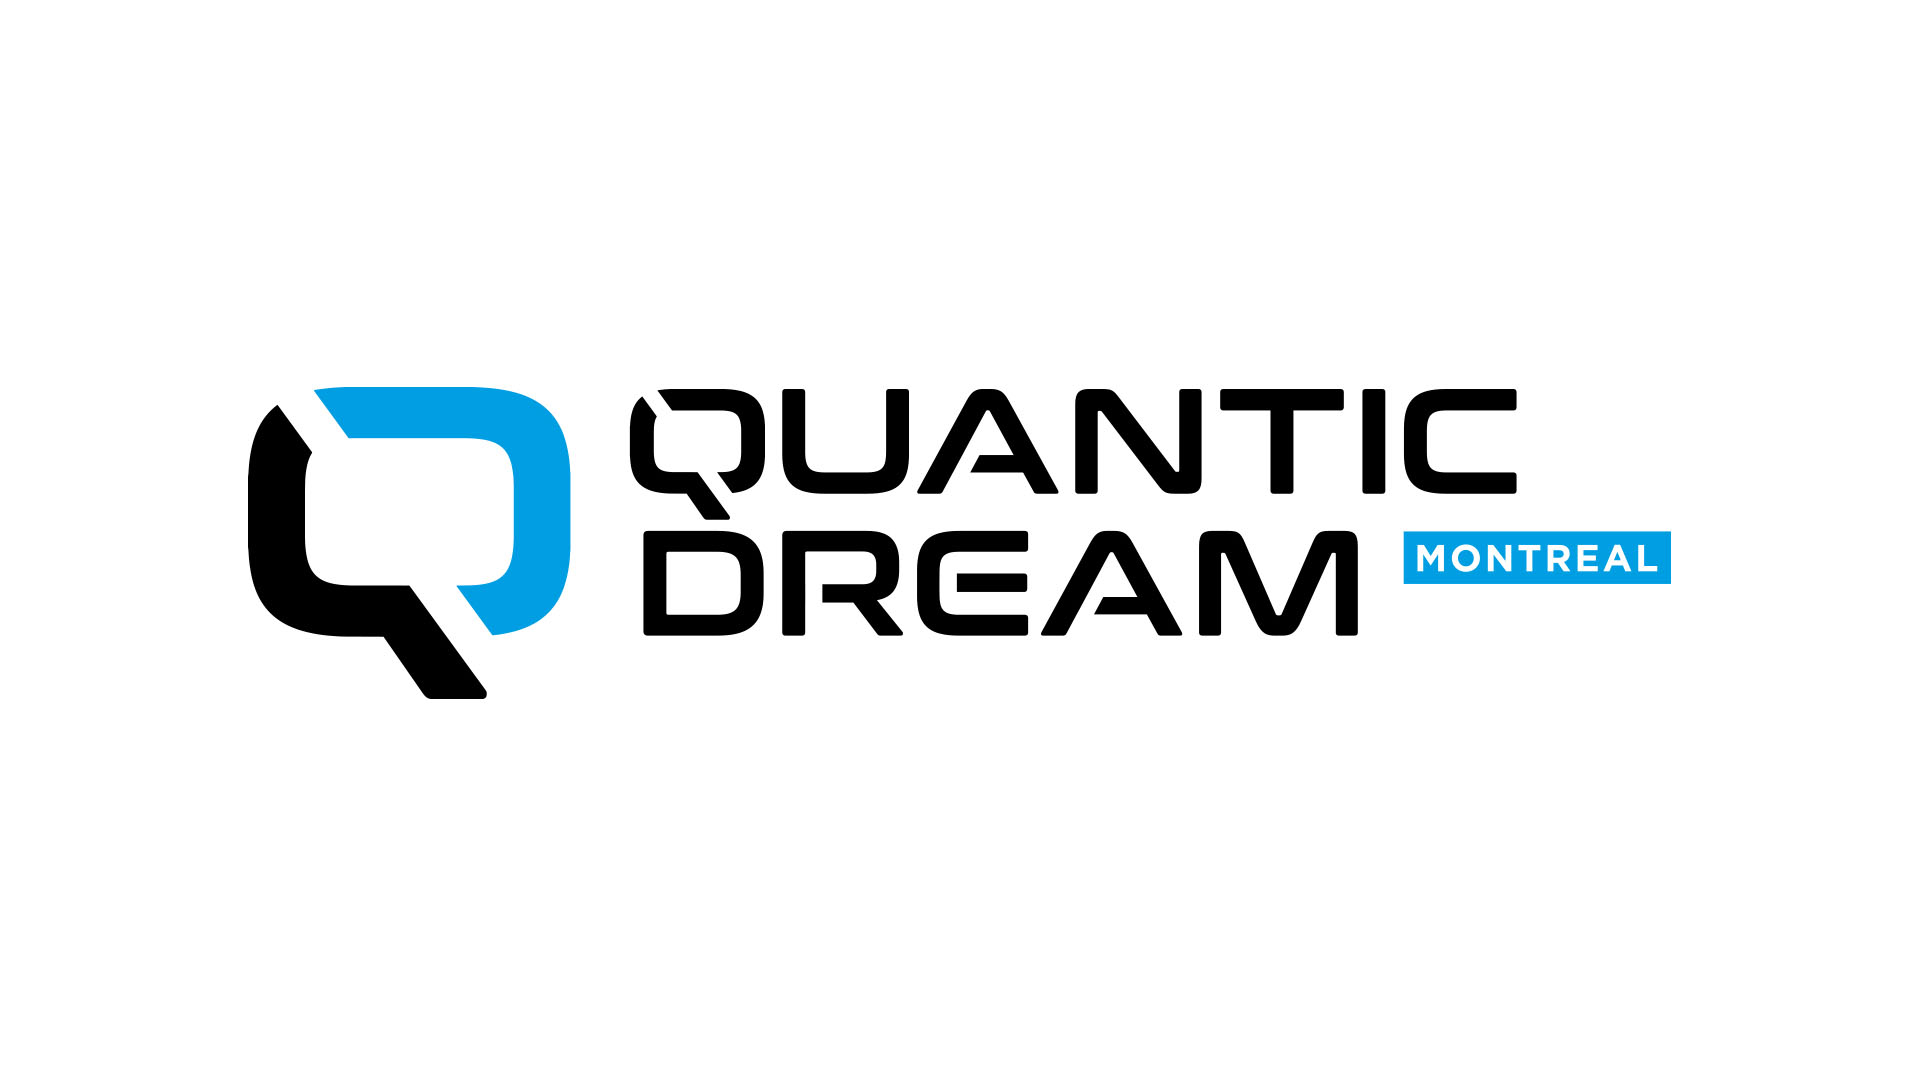 quantic dream montal